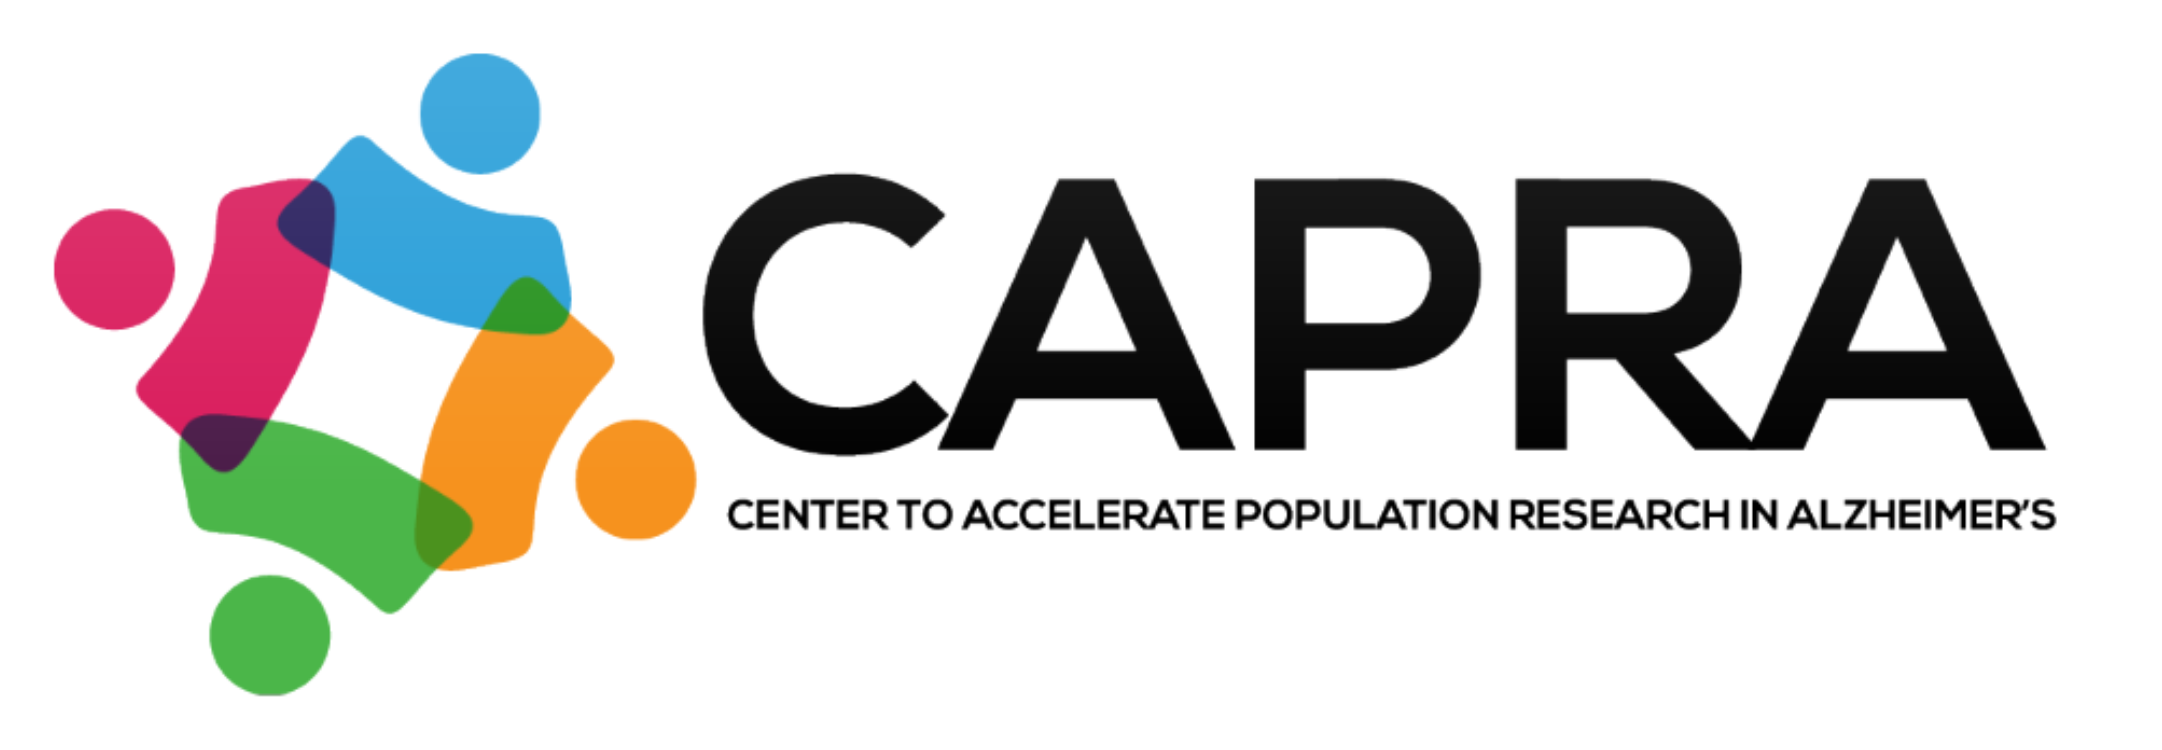 Michigan Center to Accelerate Population Research in Alzheimer's (CAPRA) signature